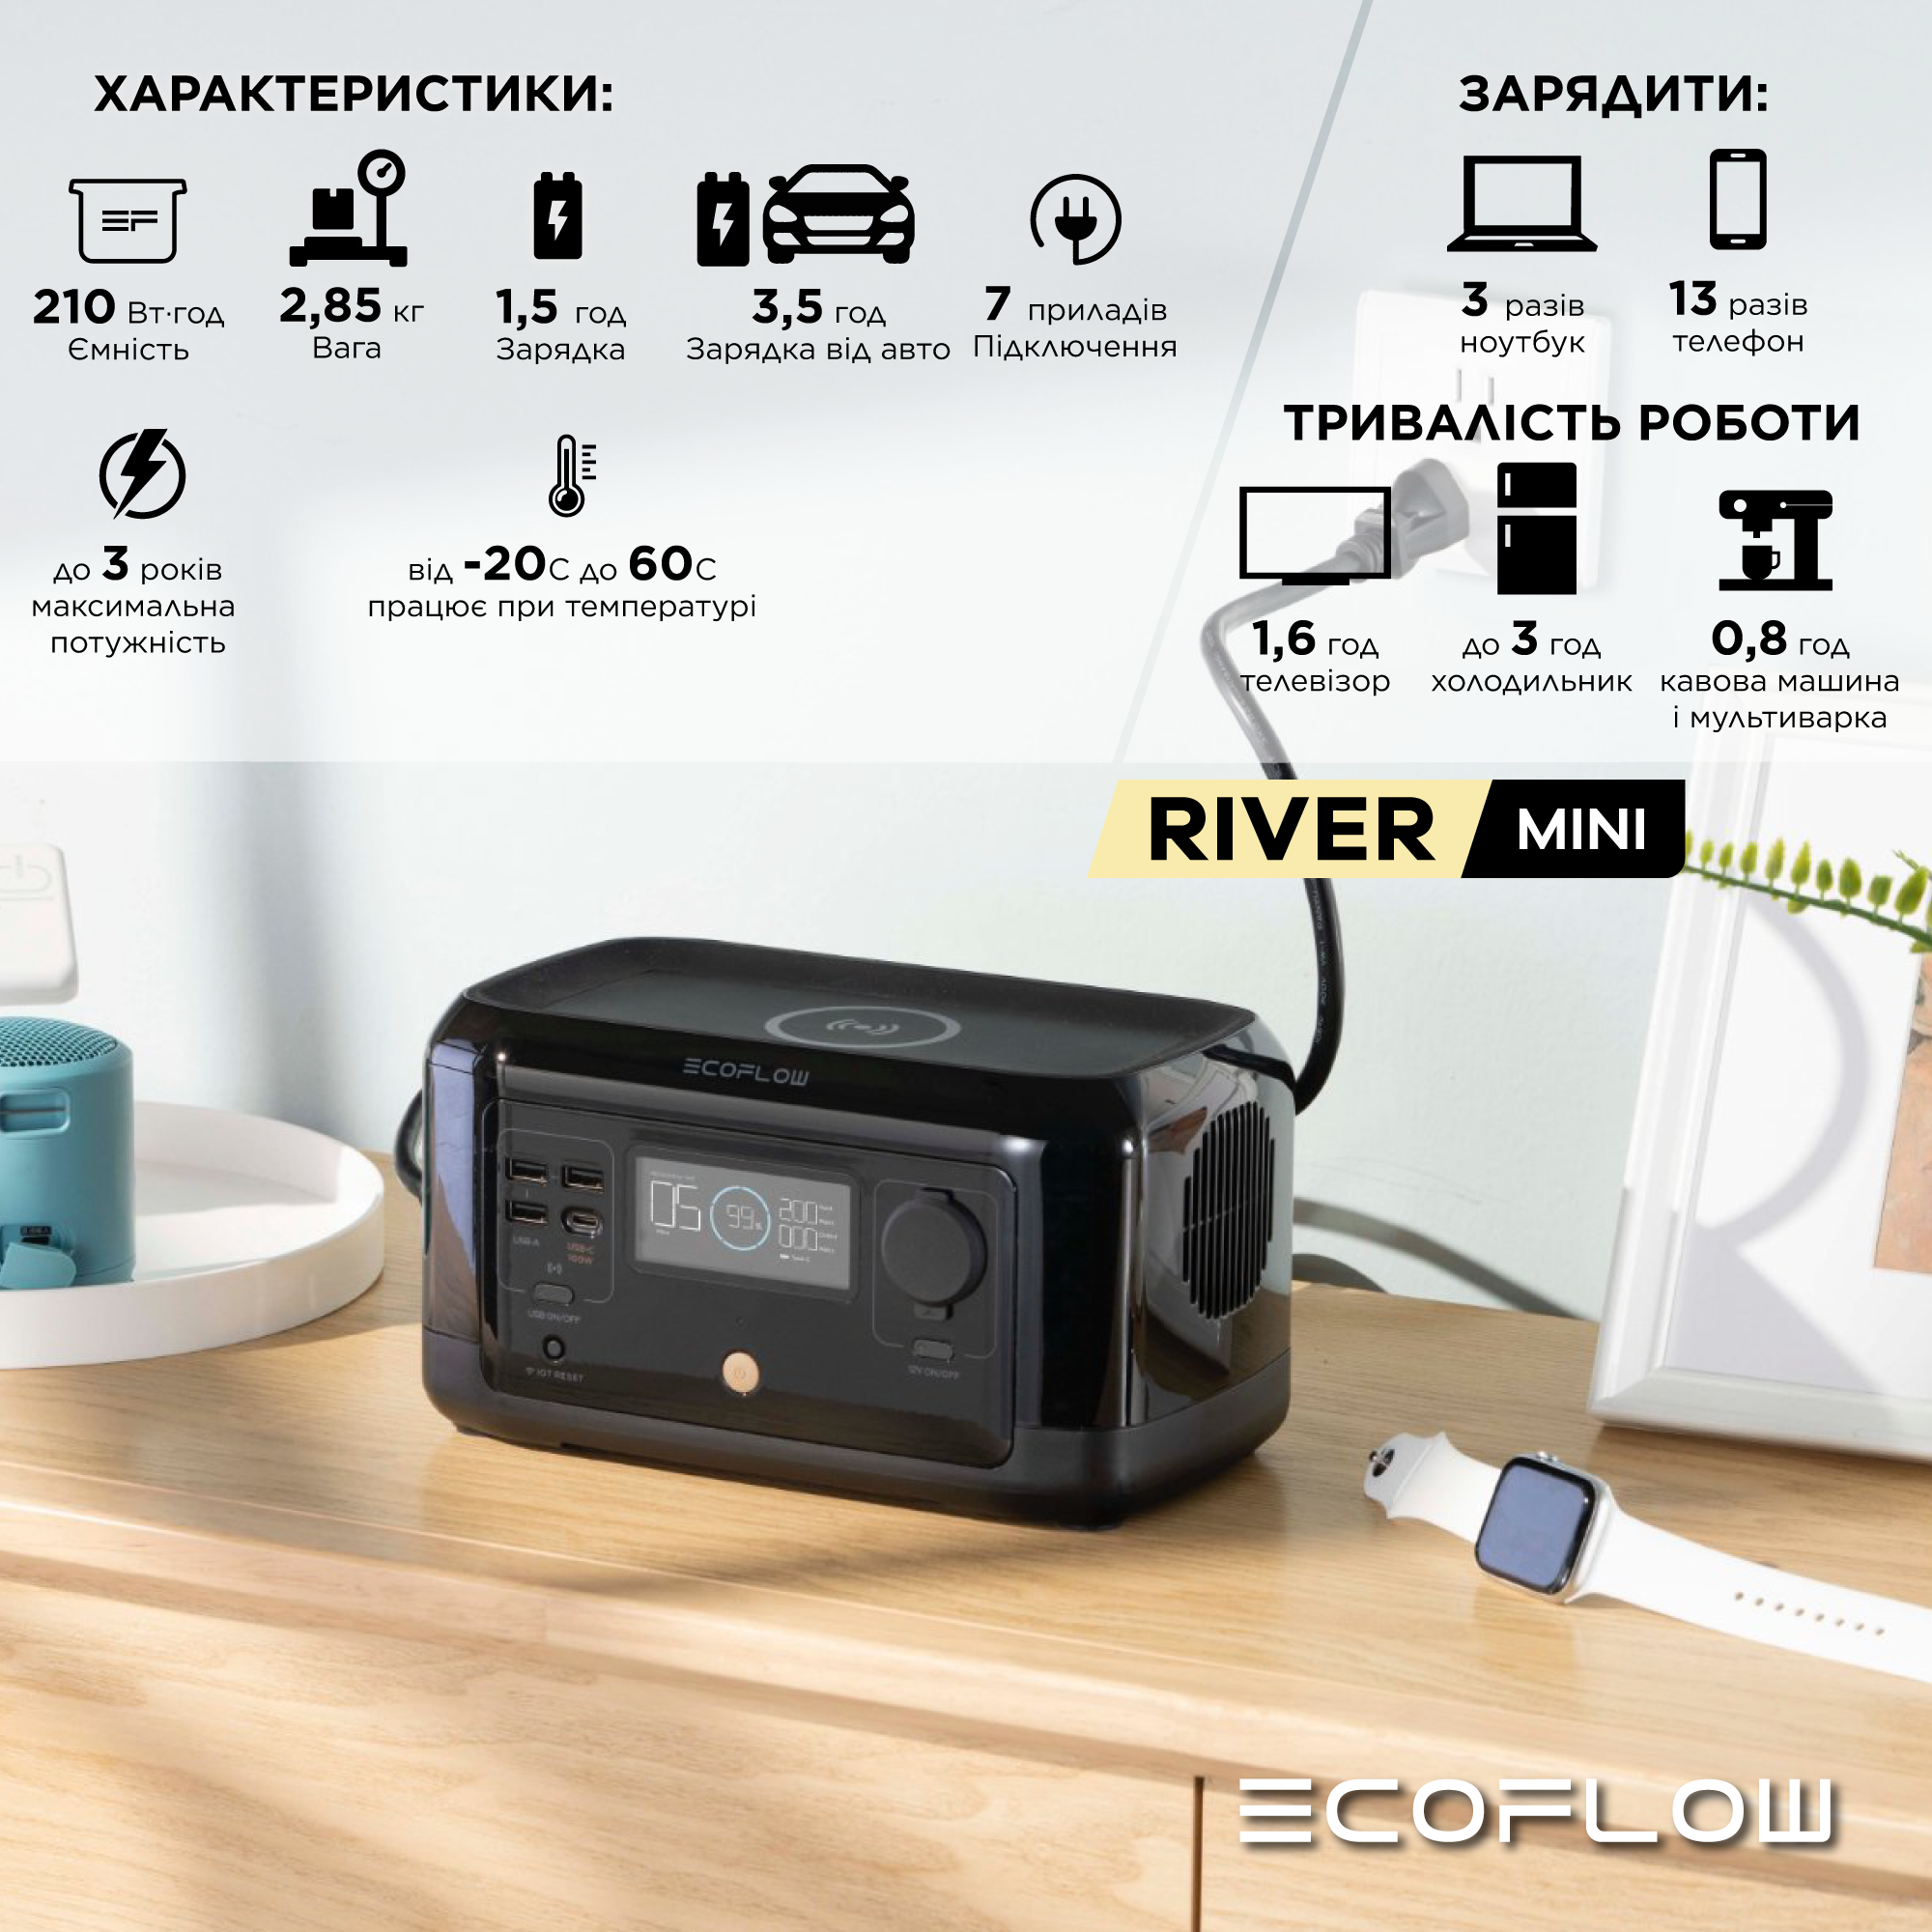 Зарядная станция EcoFlow RIVER mini (Wireless)